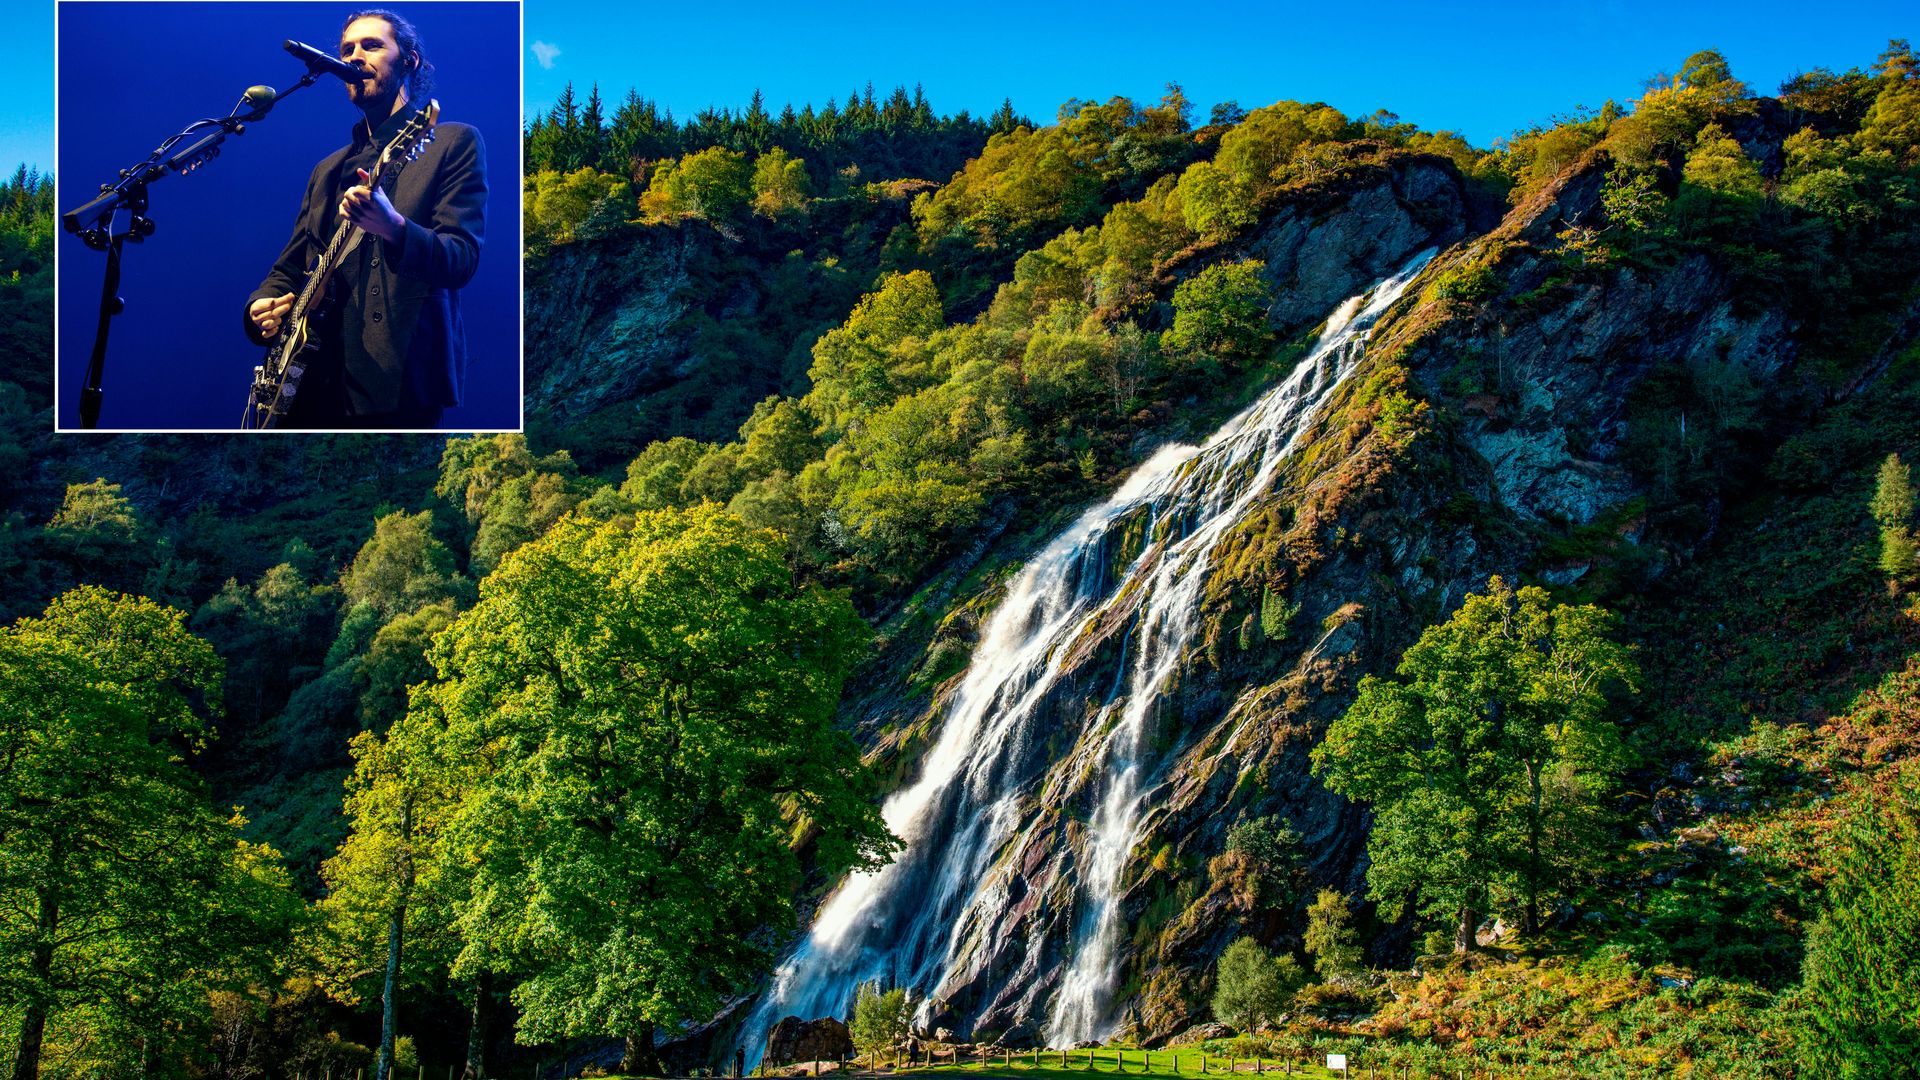 Cascada de Powerscourt en County Wicklow, Irlanda y el cantante irlandés Hozier